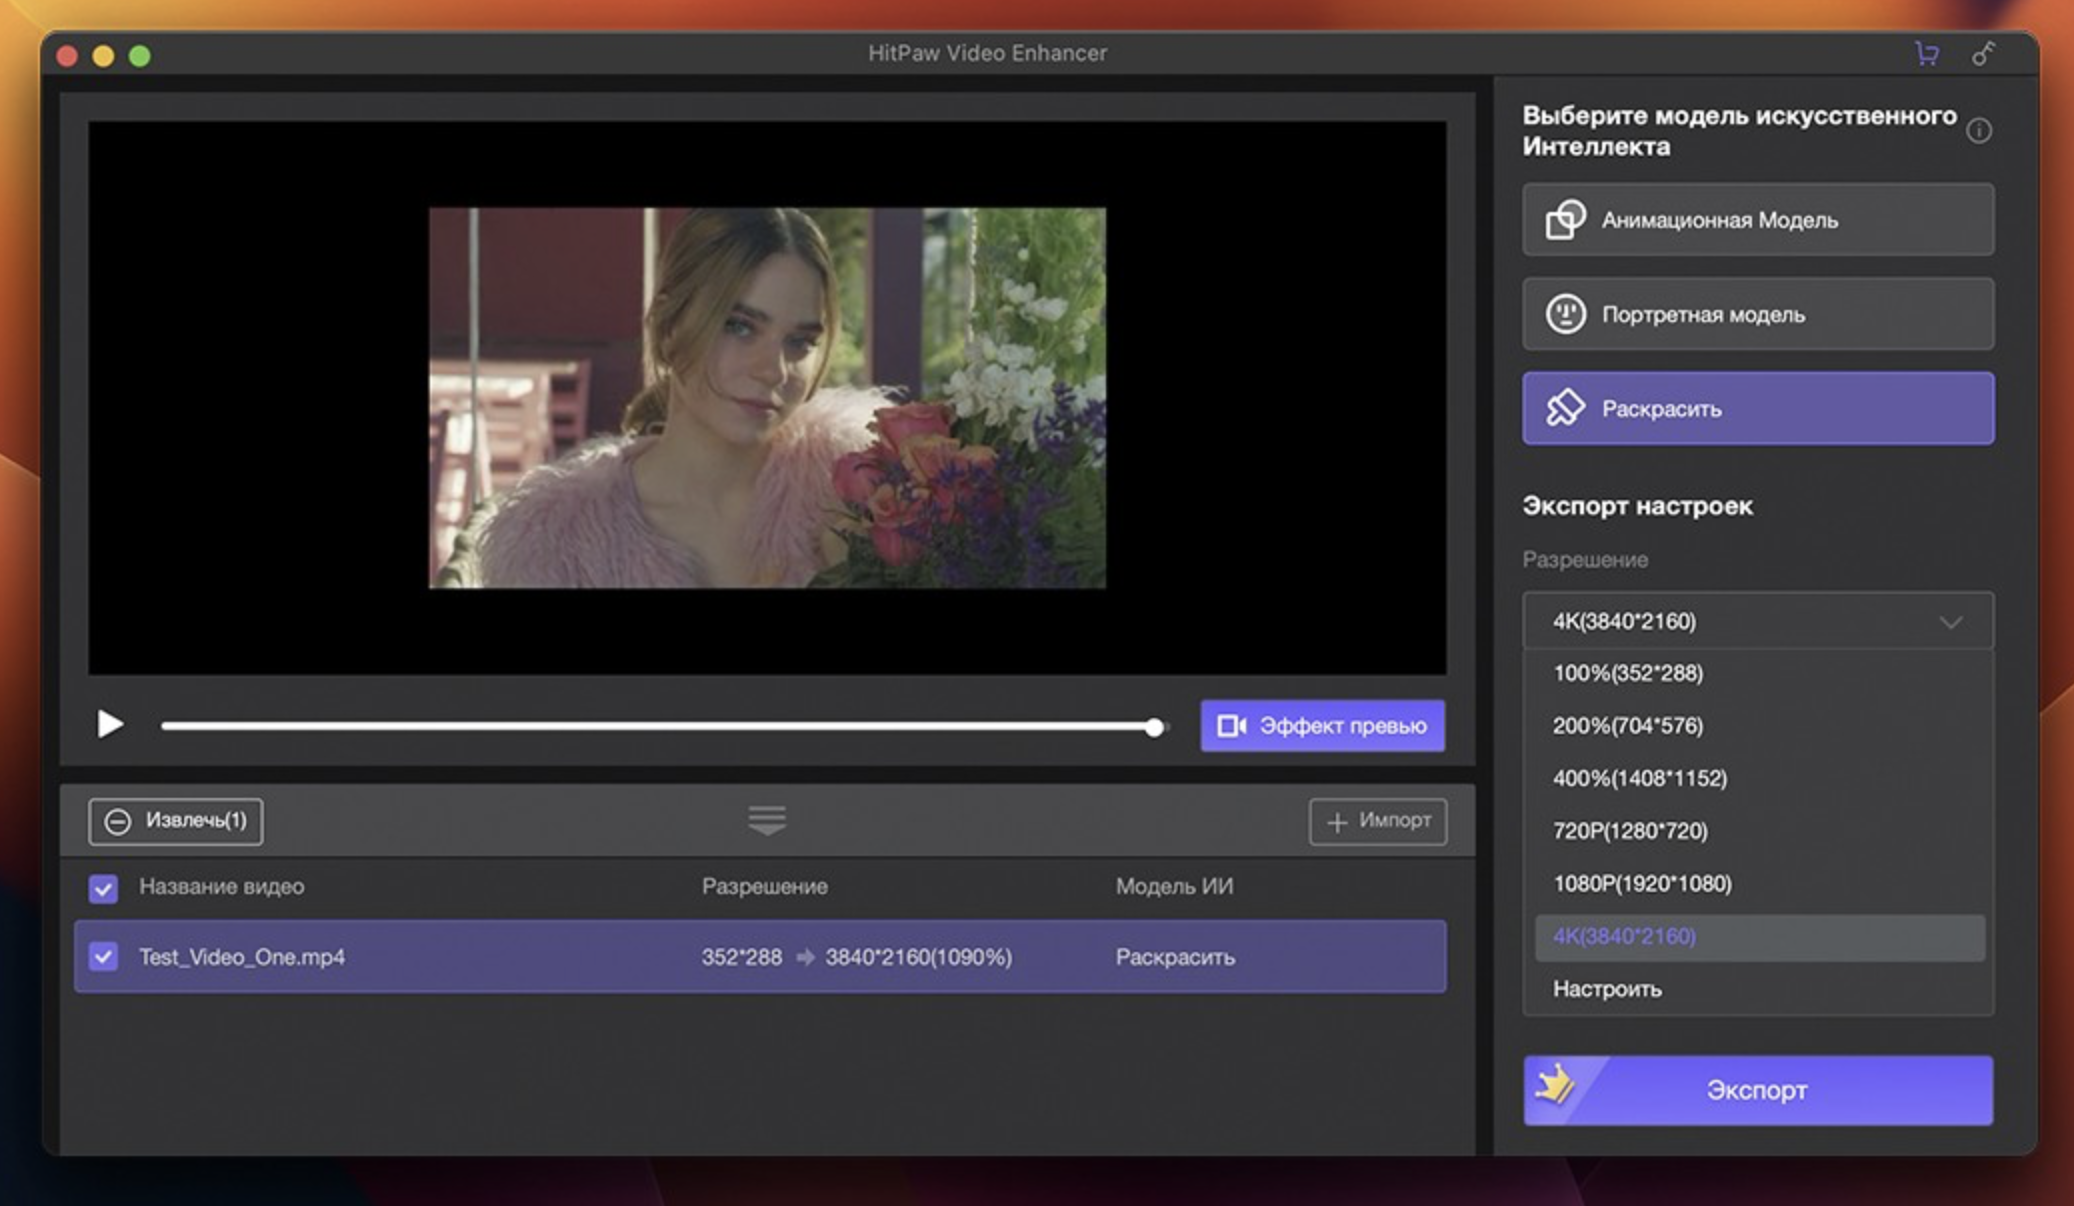 HitPaw Video Enhancer for Mac v3.0.0 视频增强器 破解版-1